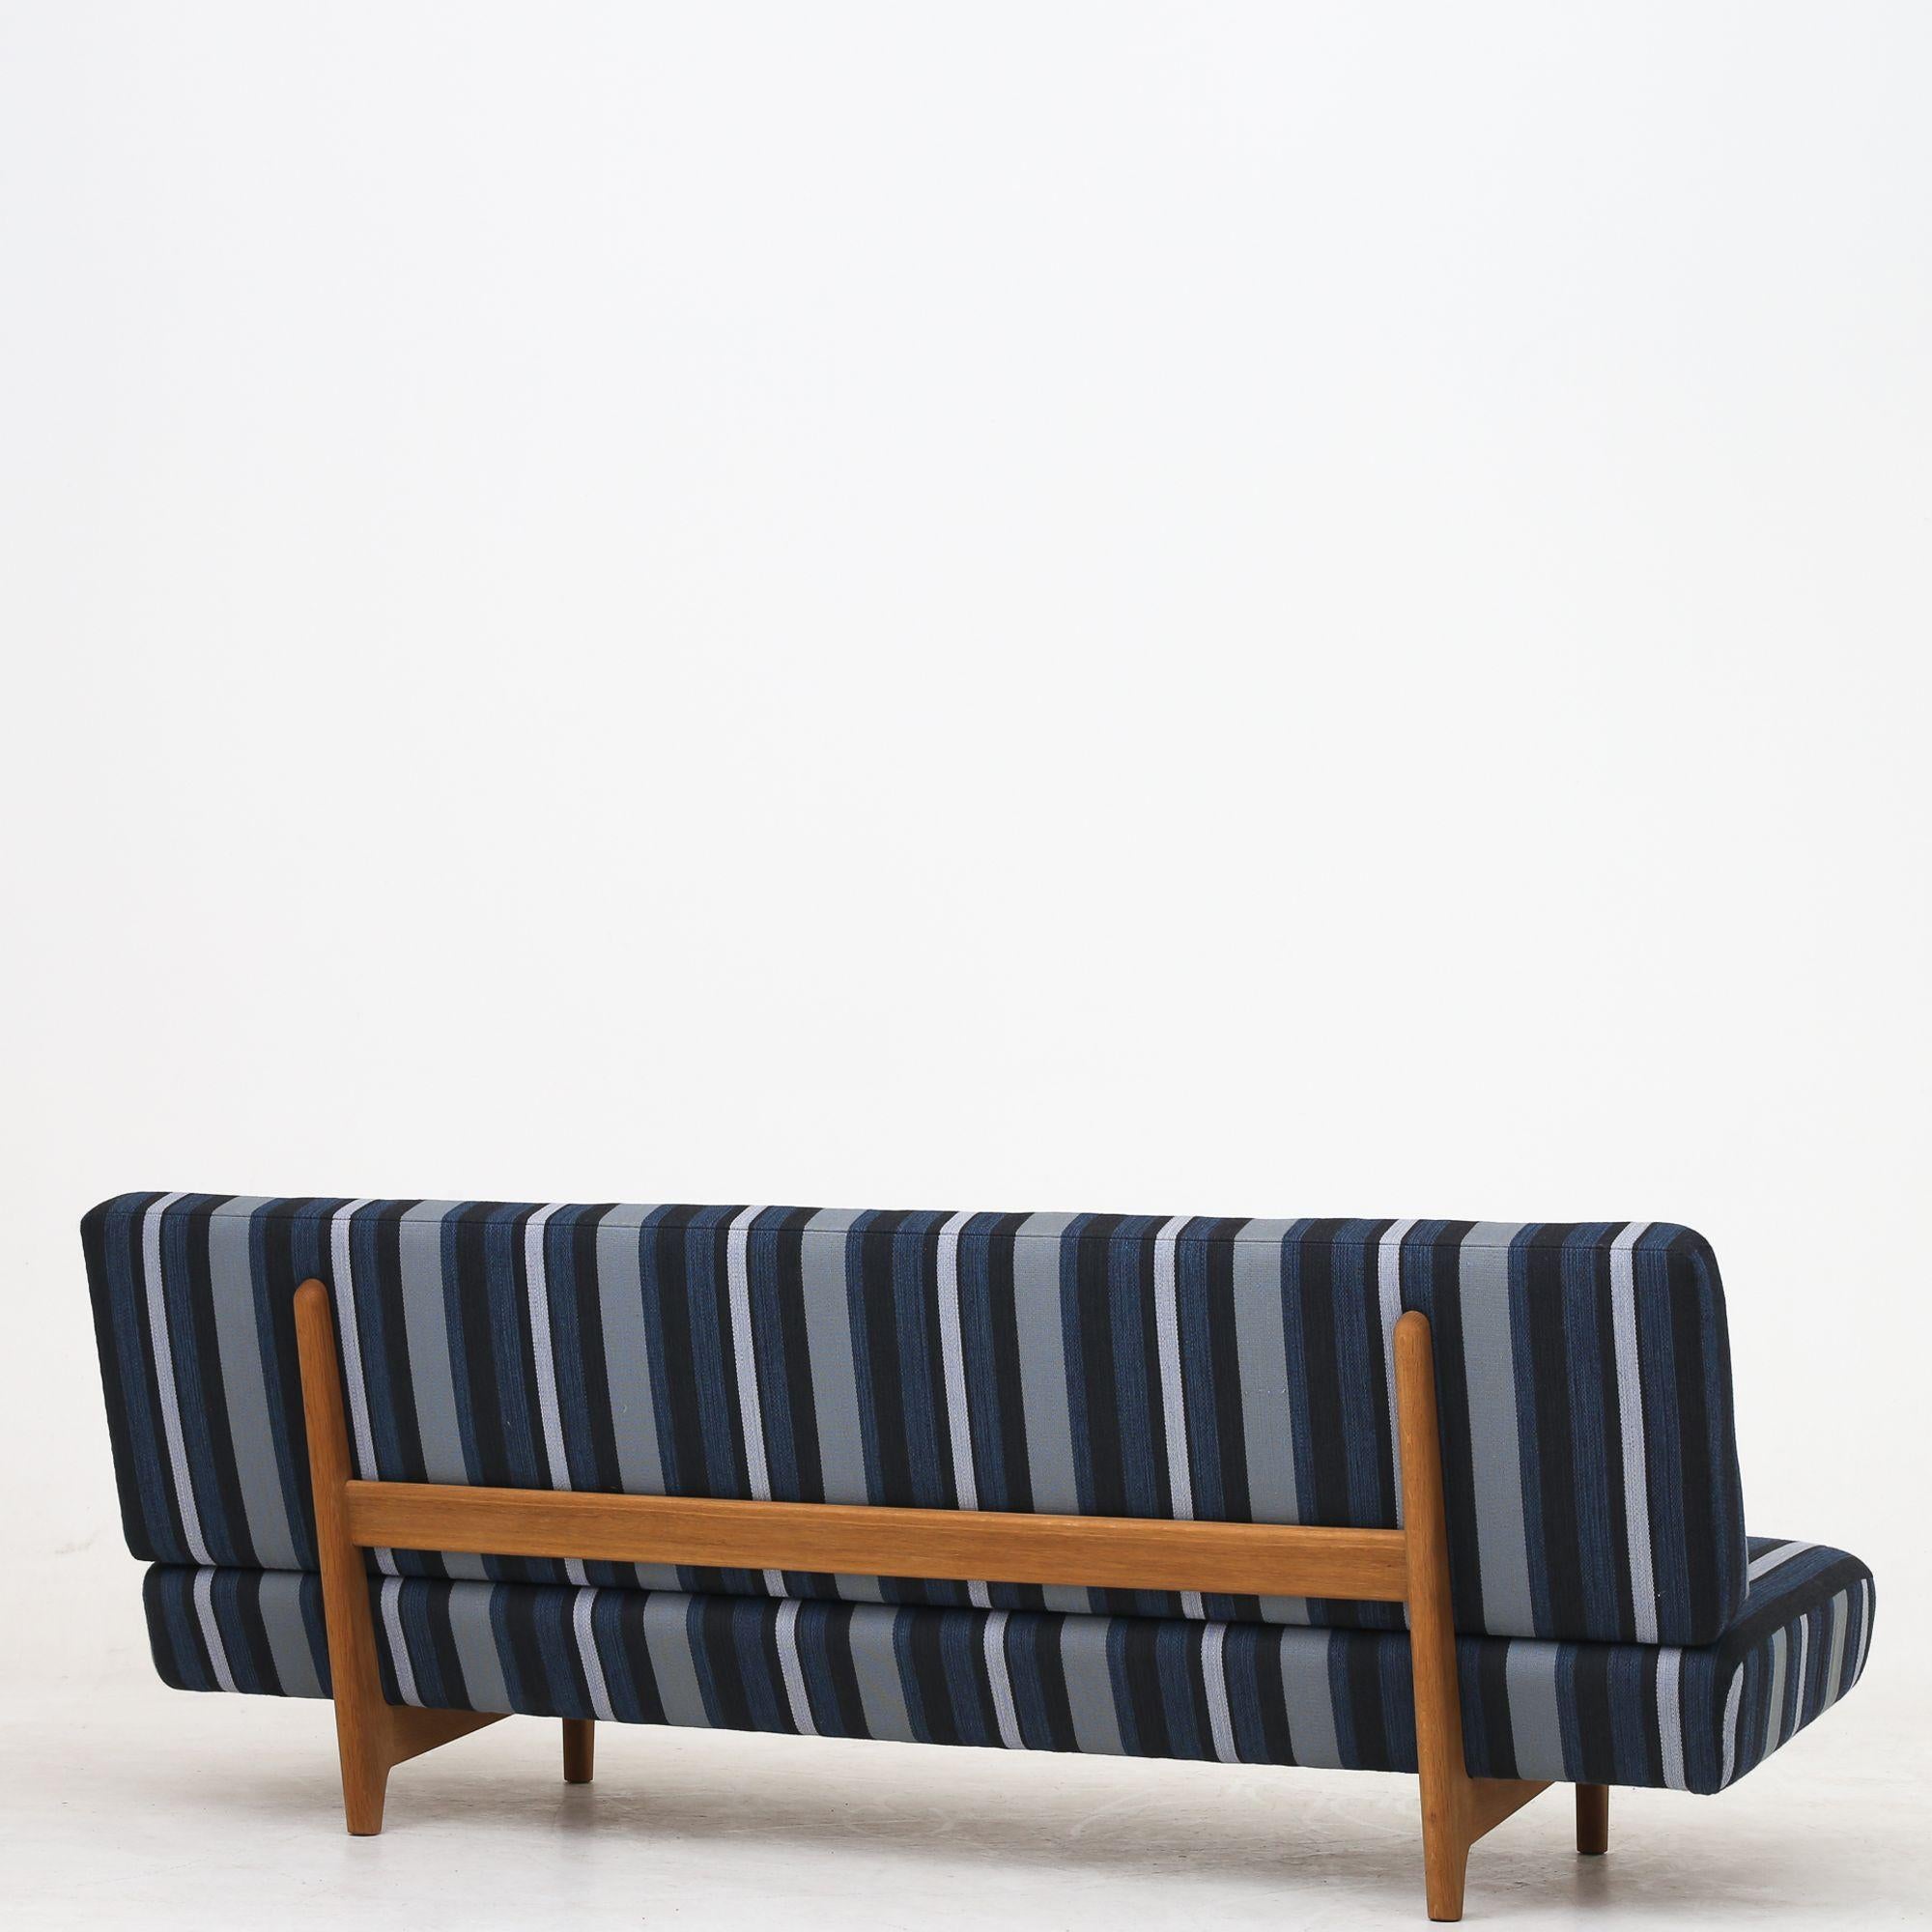 Rare canapé avec pieds en chêne patiné, nouvellement tapissé en textile (DAW, couleur Stripe 7) Hans J. Wegner / Johannes Hansen.